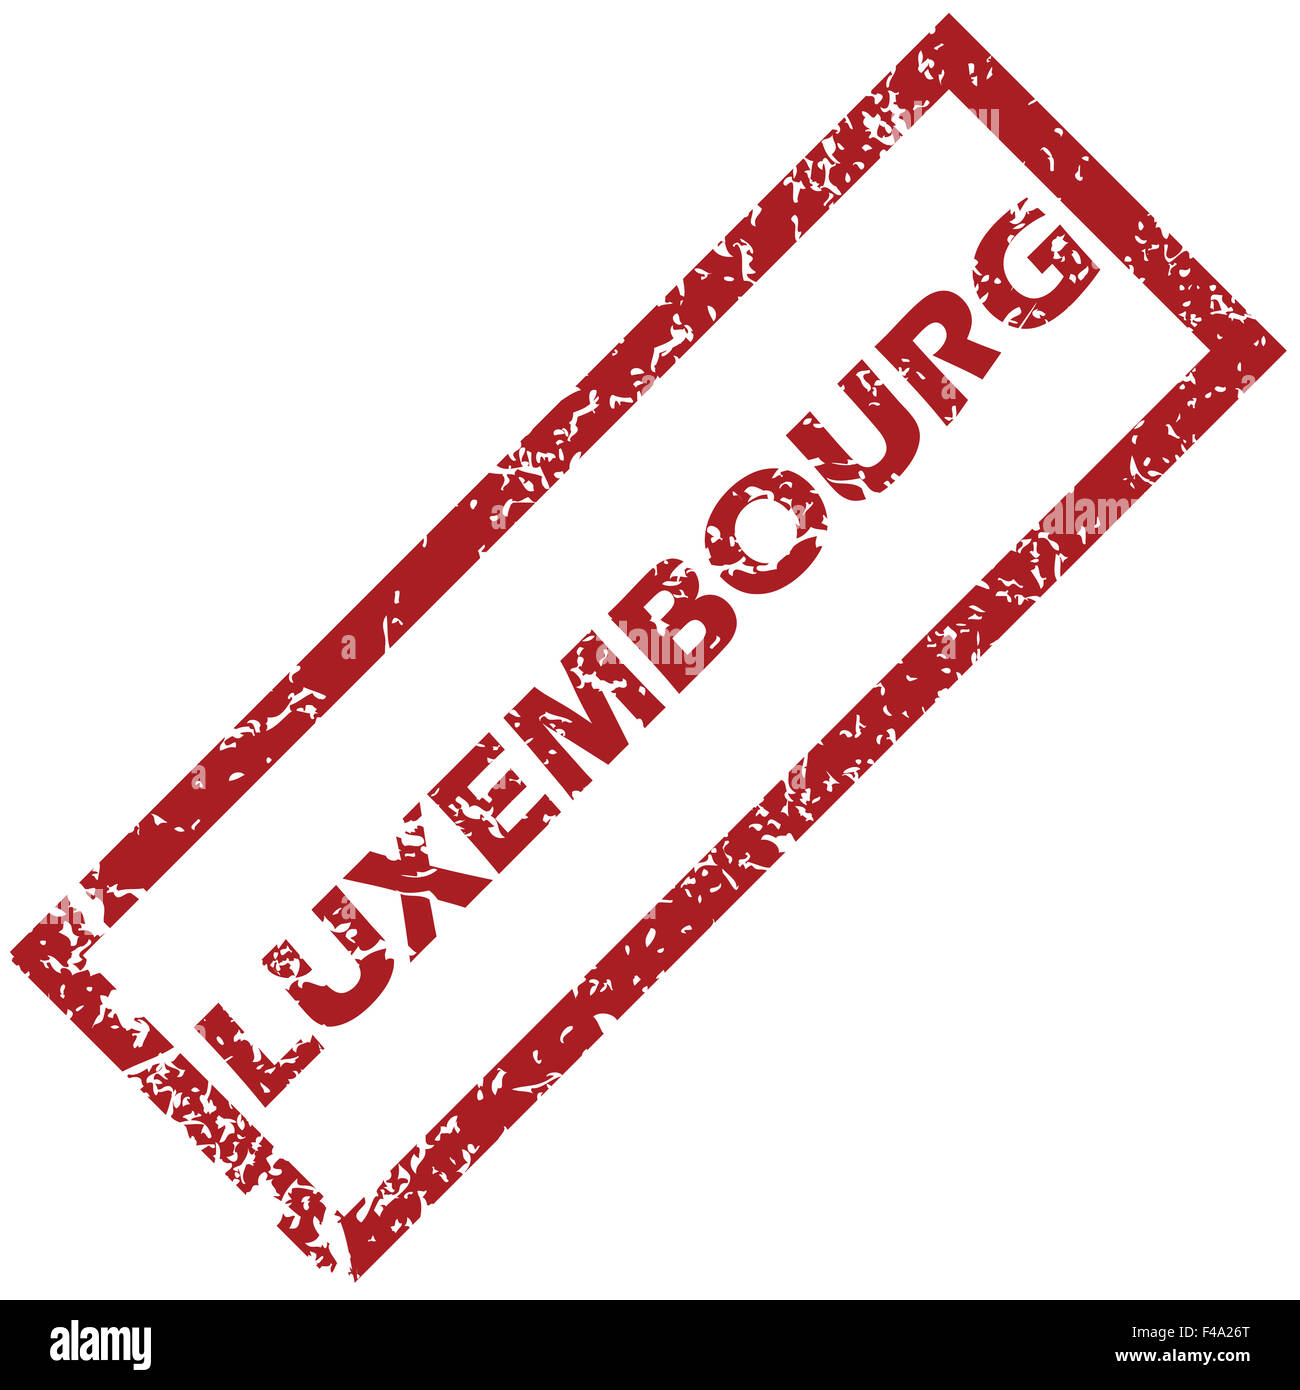 Luxembourg post mark stamp post Banque d'images détourées - Alamy